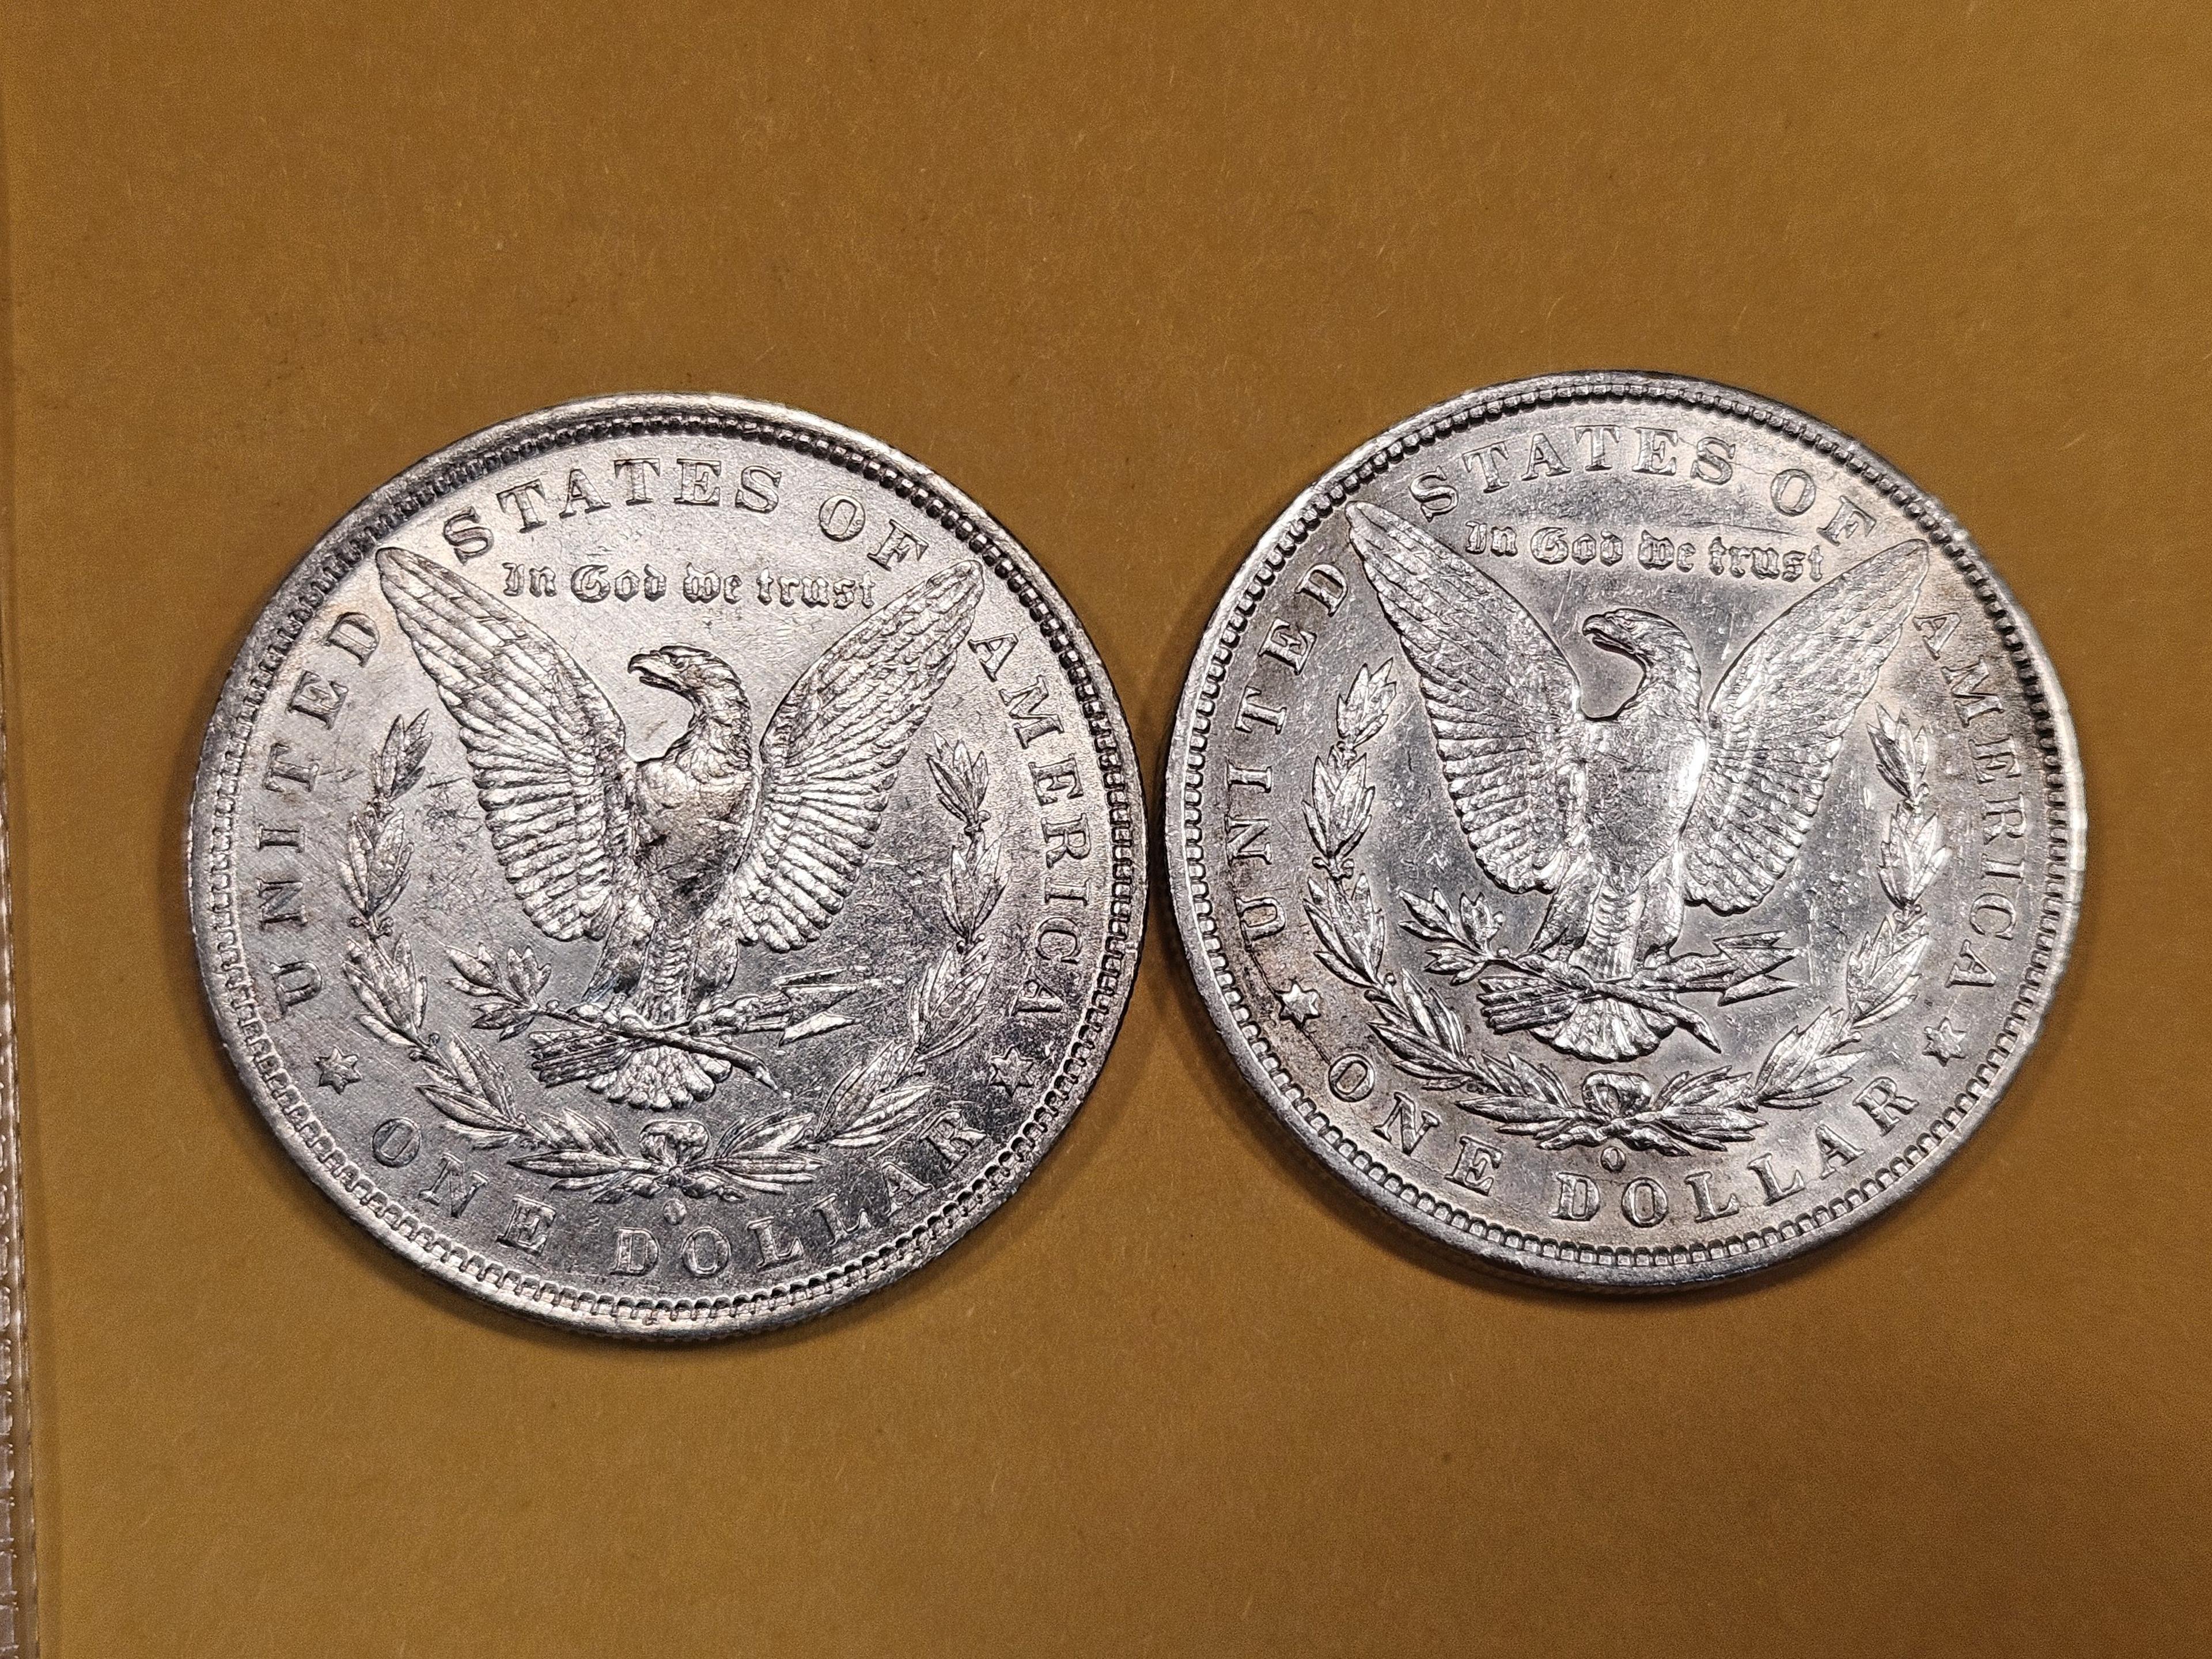 1882-O and 1899-O Morgan Dollars